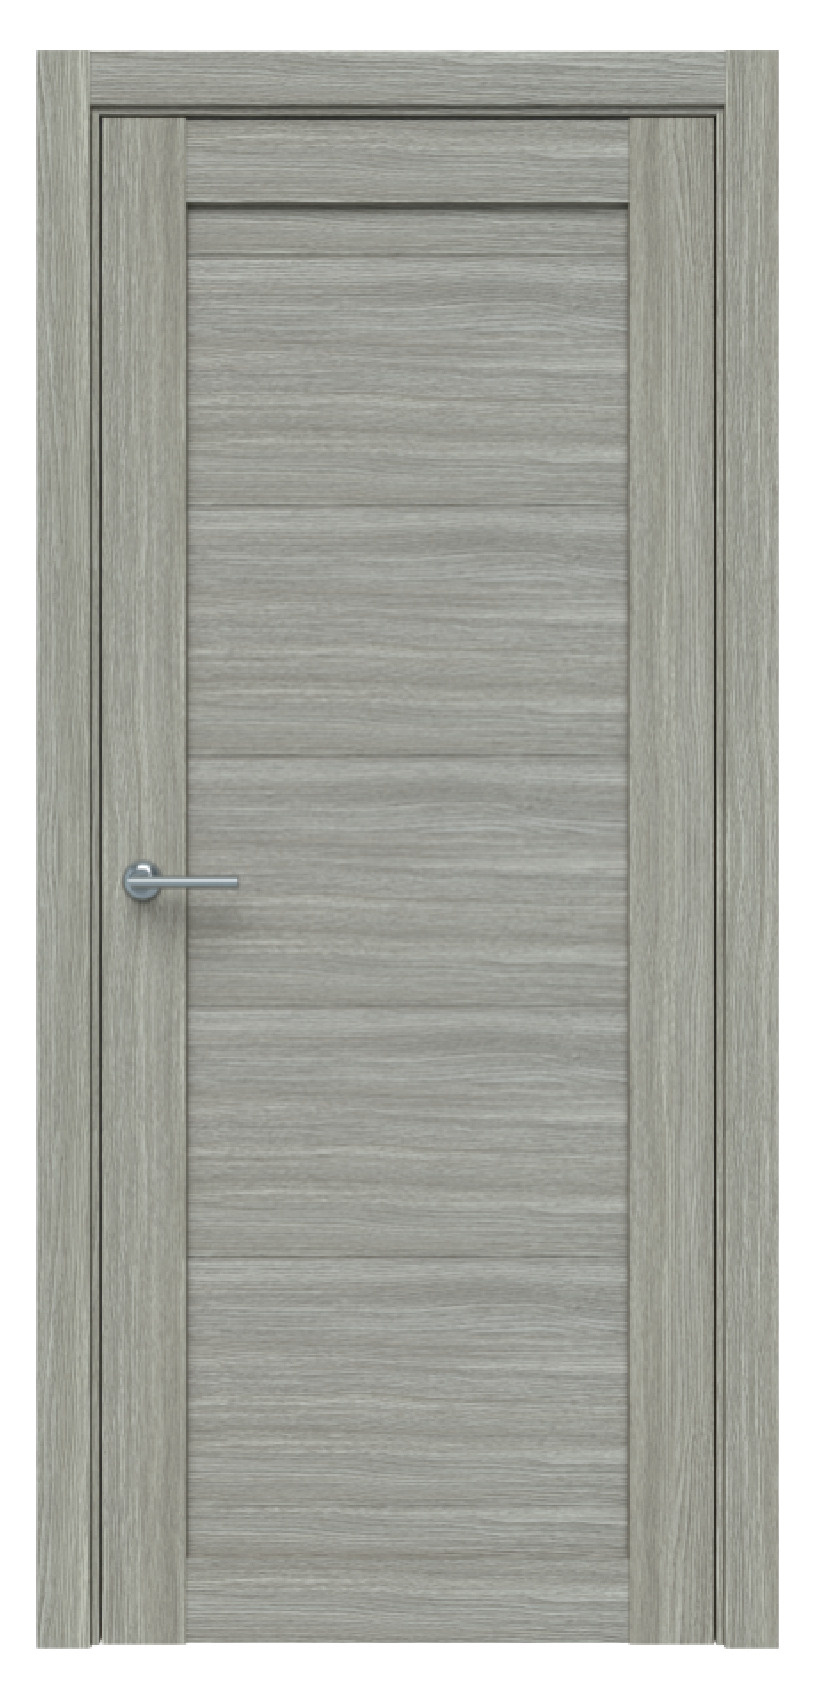 Questdoors Межкомнатная дверь Q550, арт. 17500 - фото №1